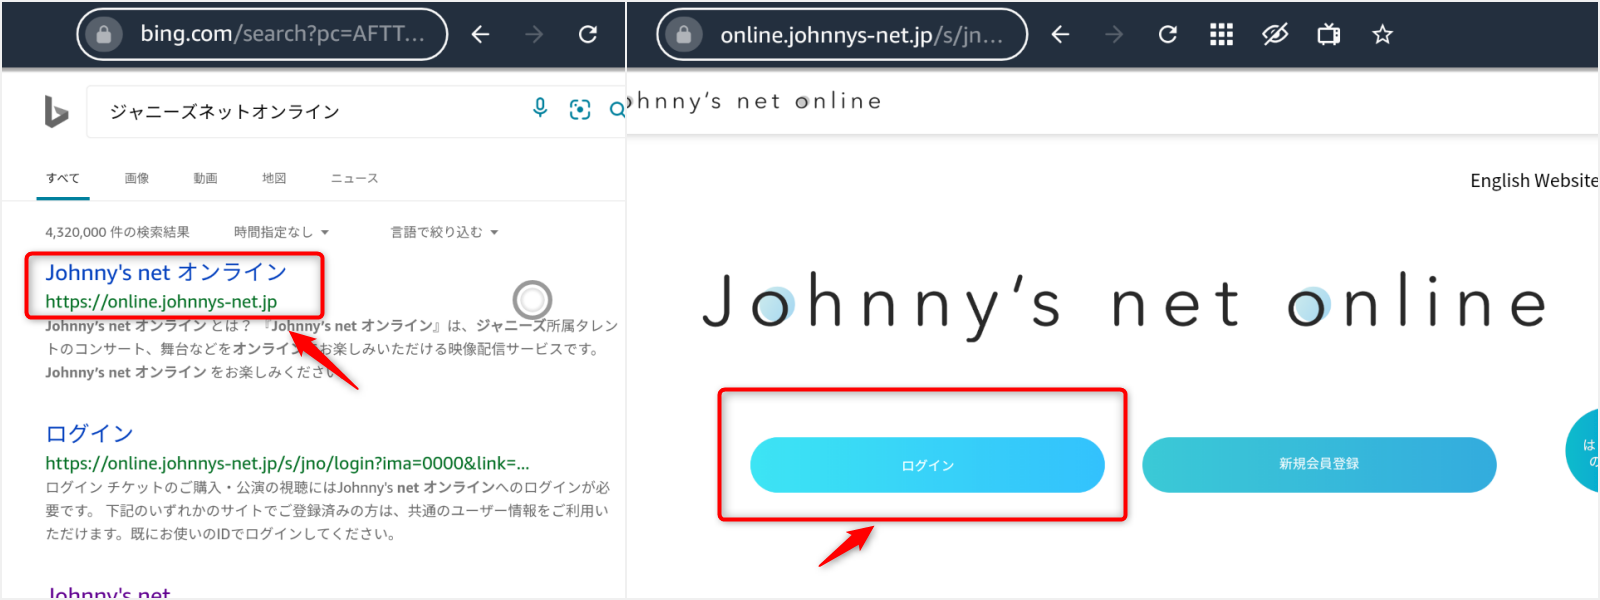 SilkブラウザでJohnny's netオンラインにアクセスしログインする